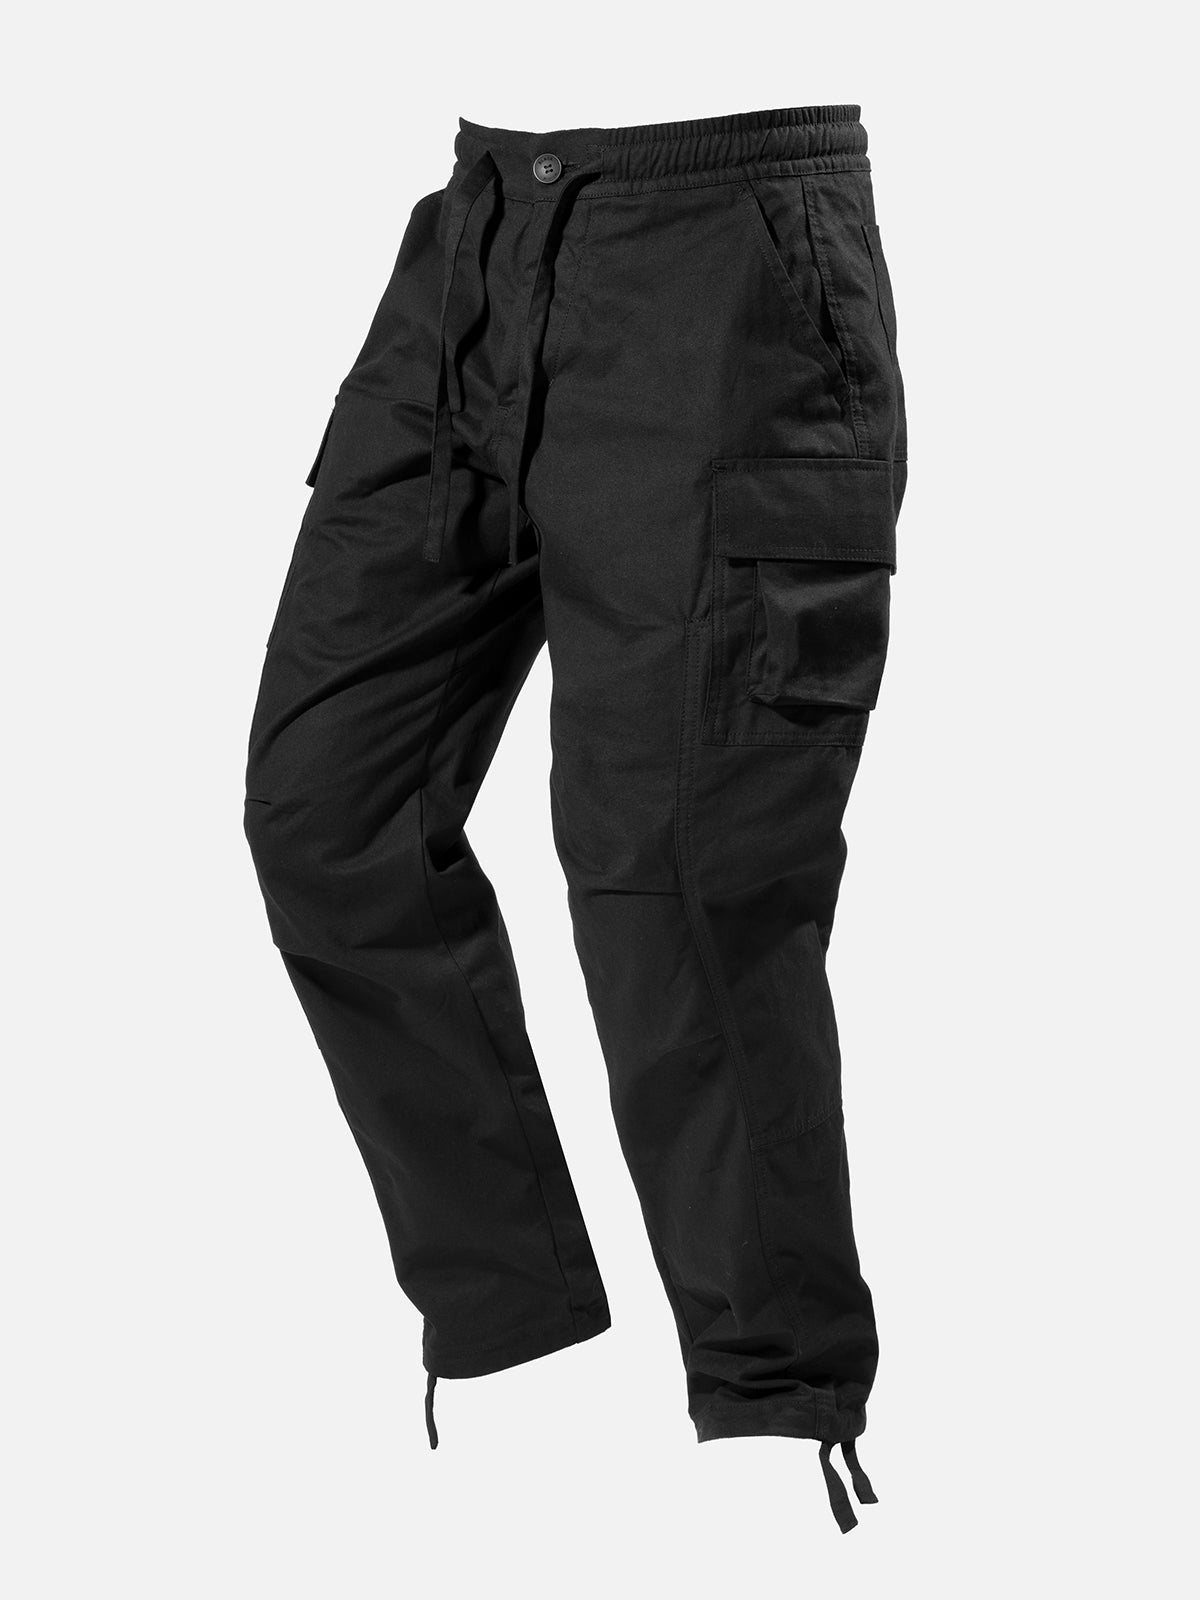 X6 Cargo Pants - Black  Blacktailor – BLACKTAILOR